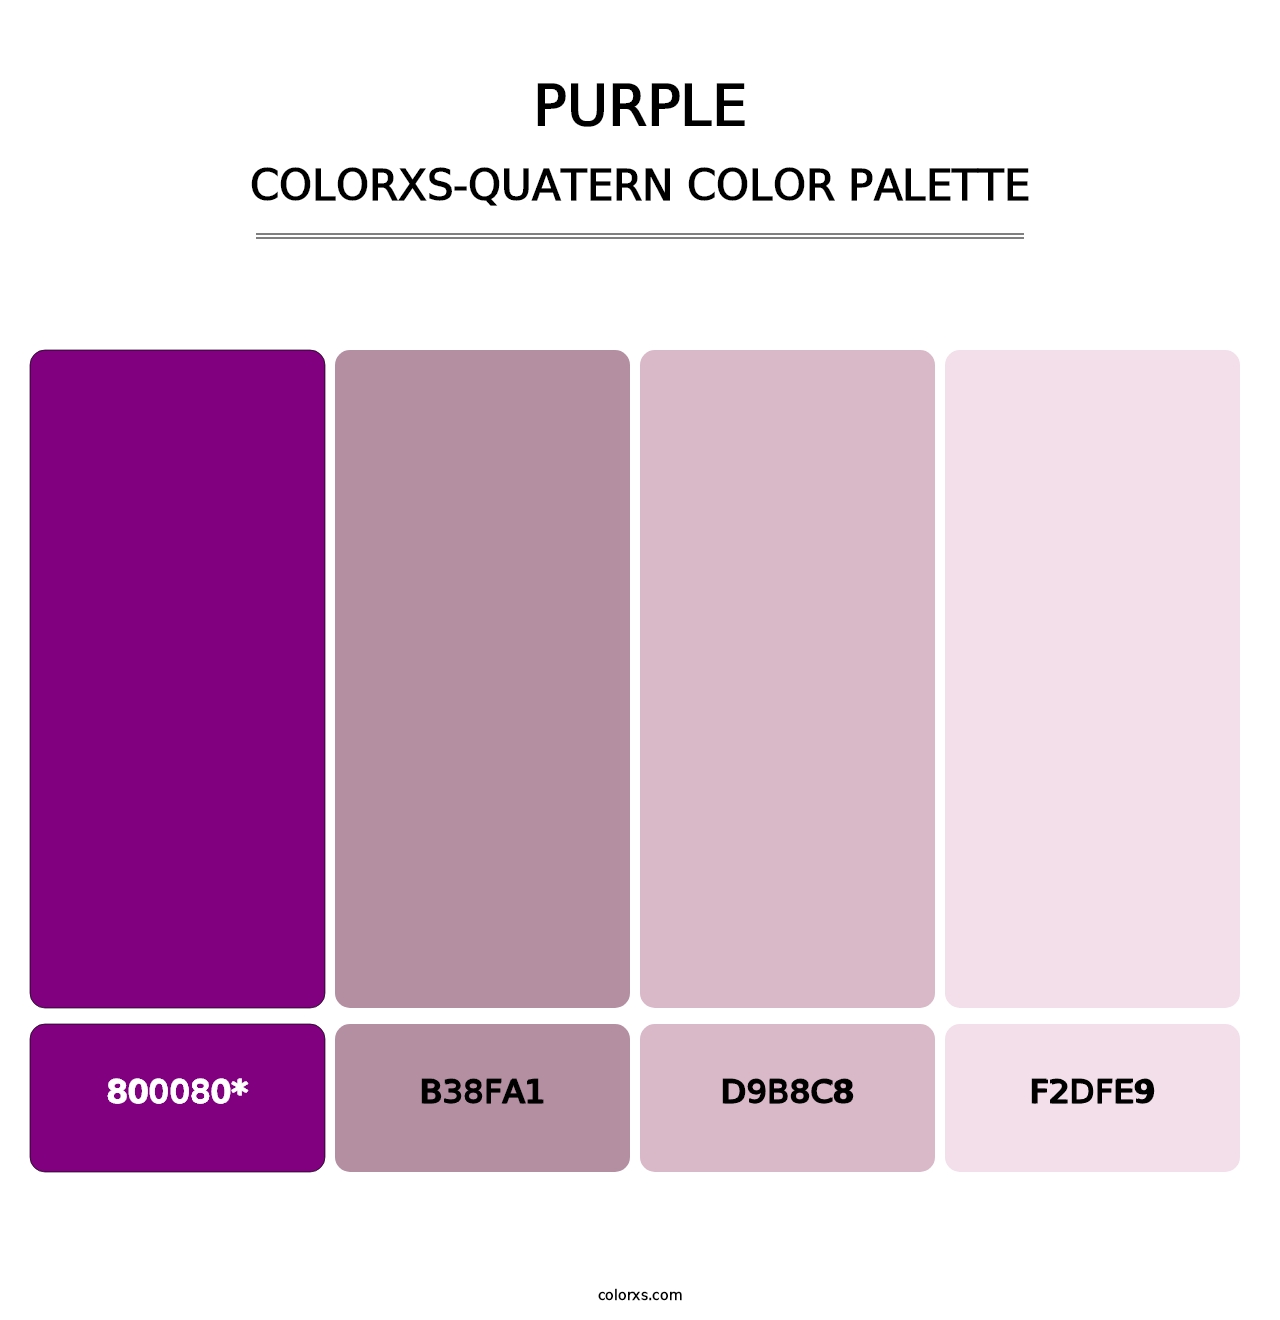 Purple - Colorxs Quatern Palette